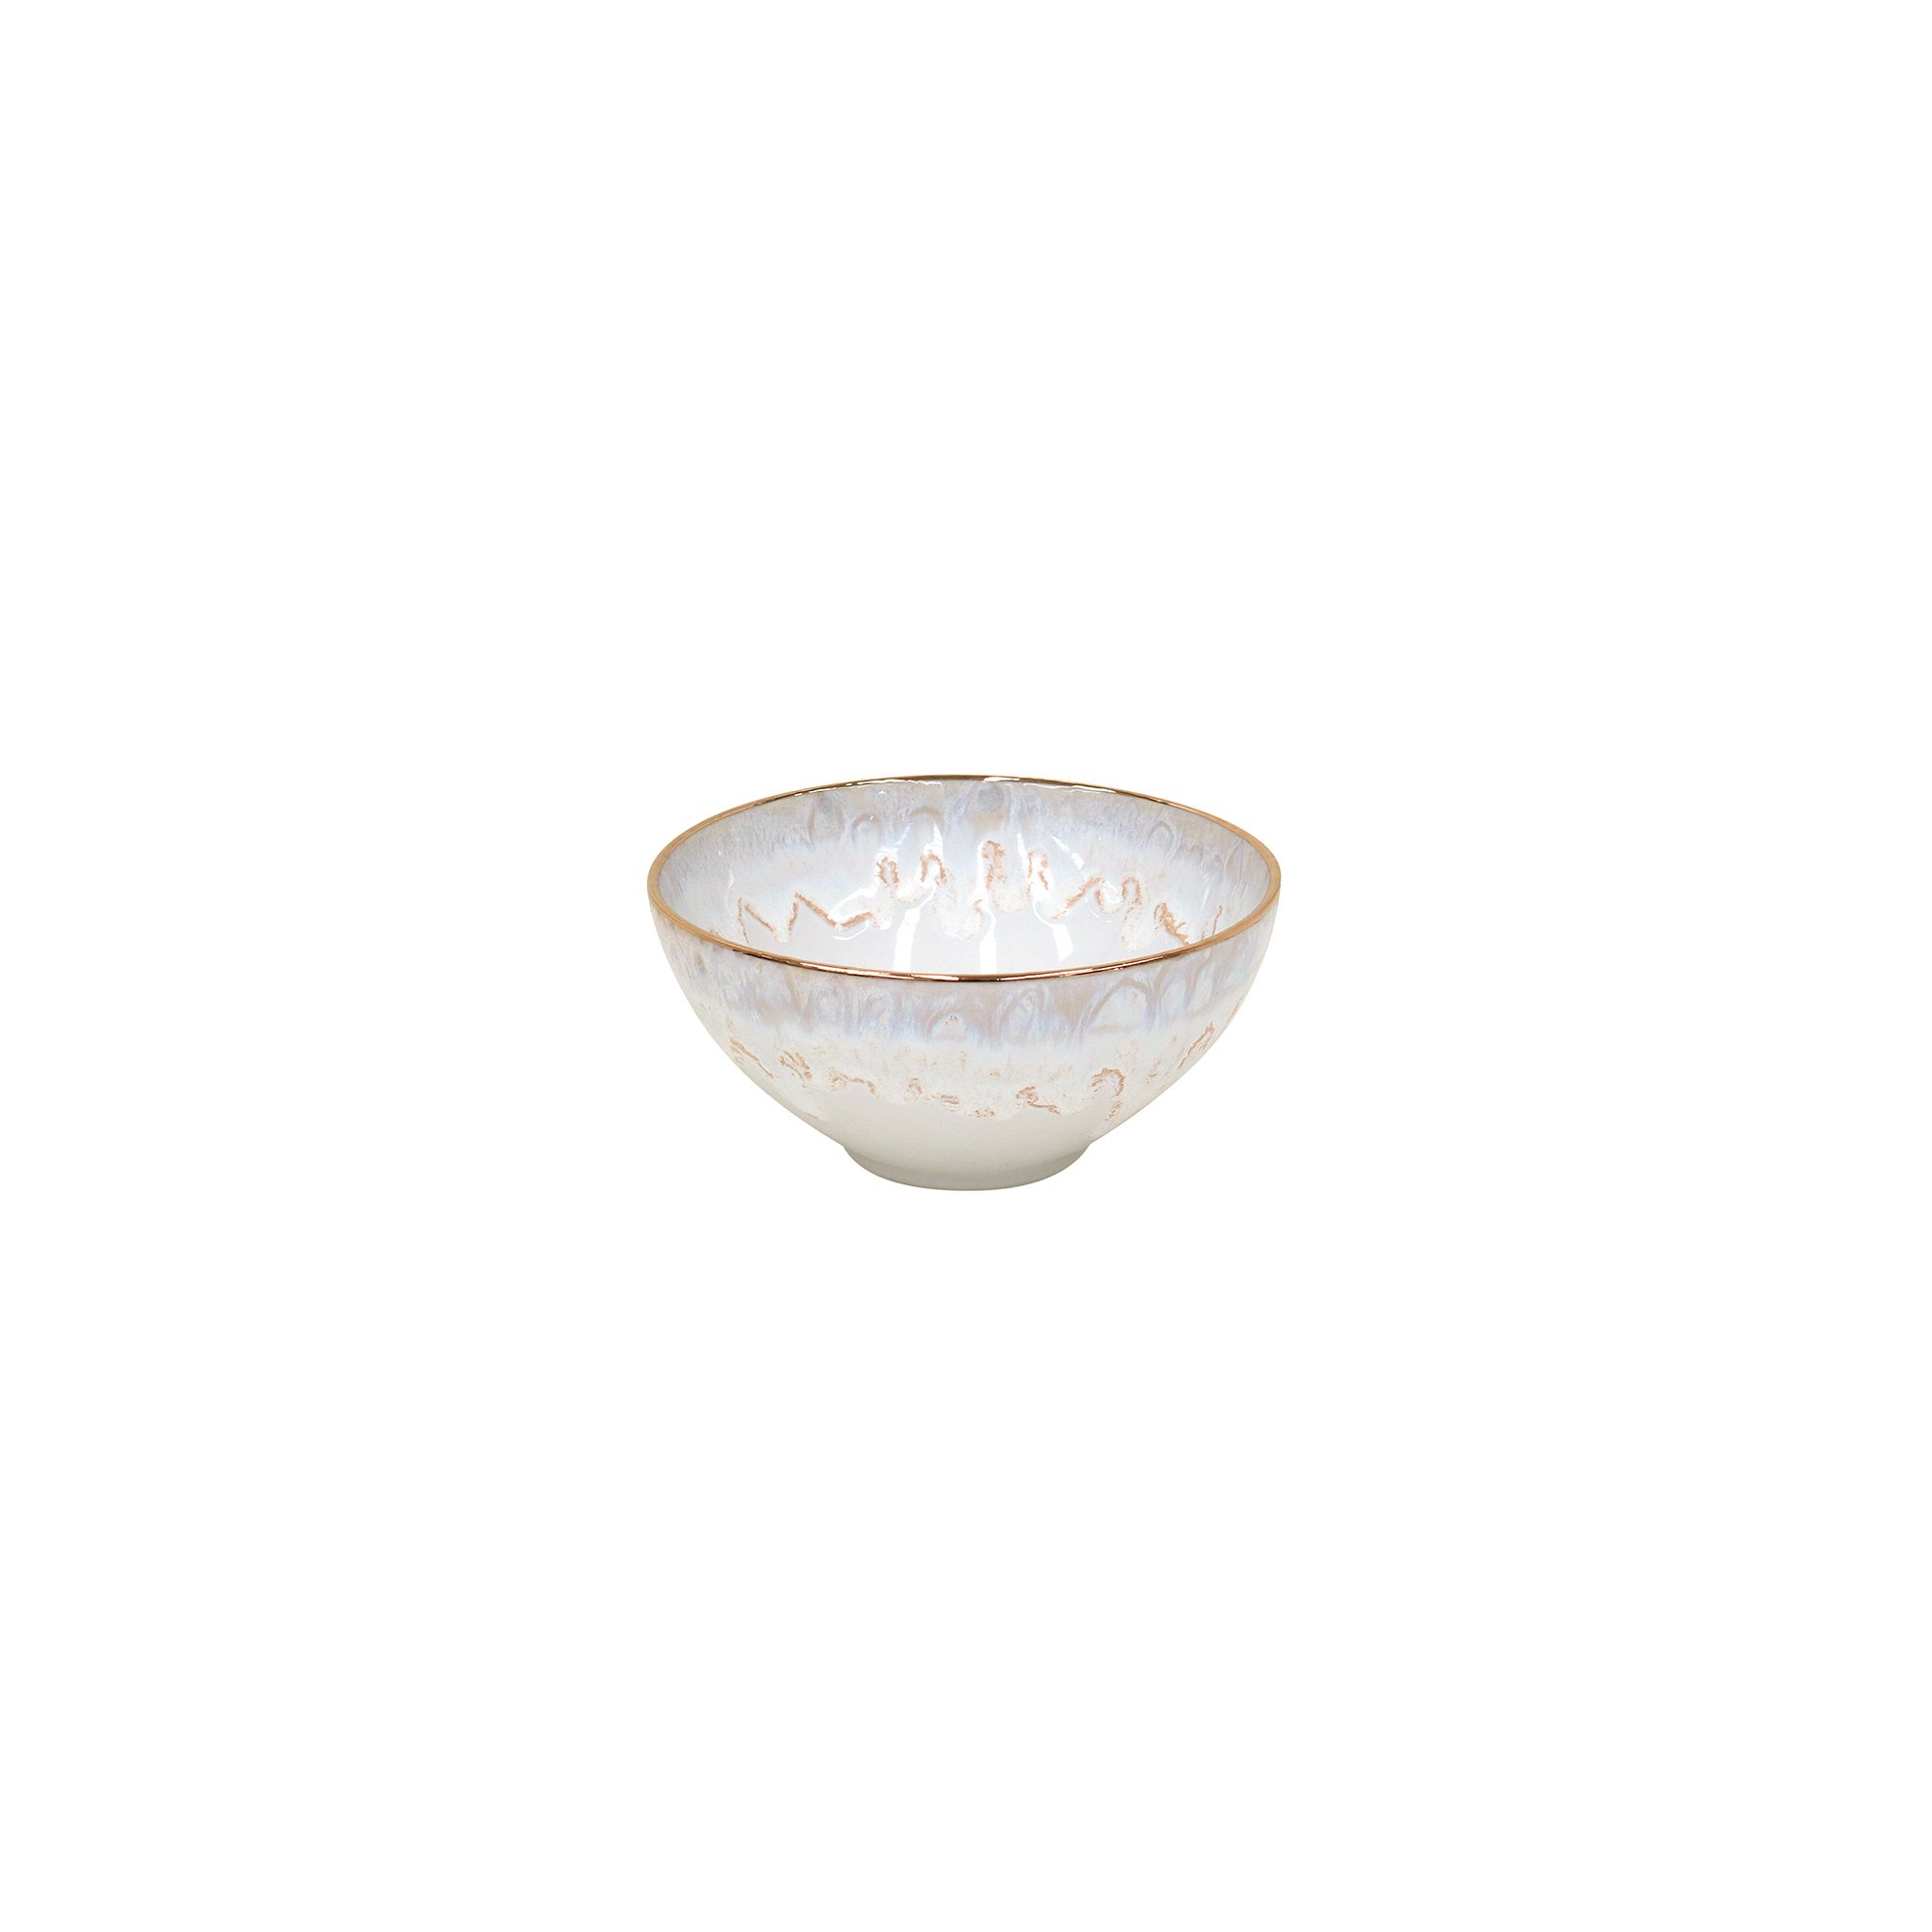 Casafina Taormina Stoneware Gold-Rimmed Cereal Bowls (Set of 4) | West Elm